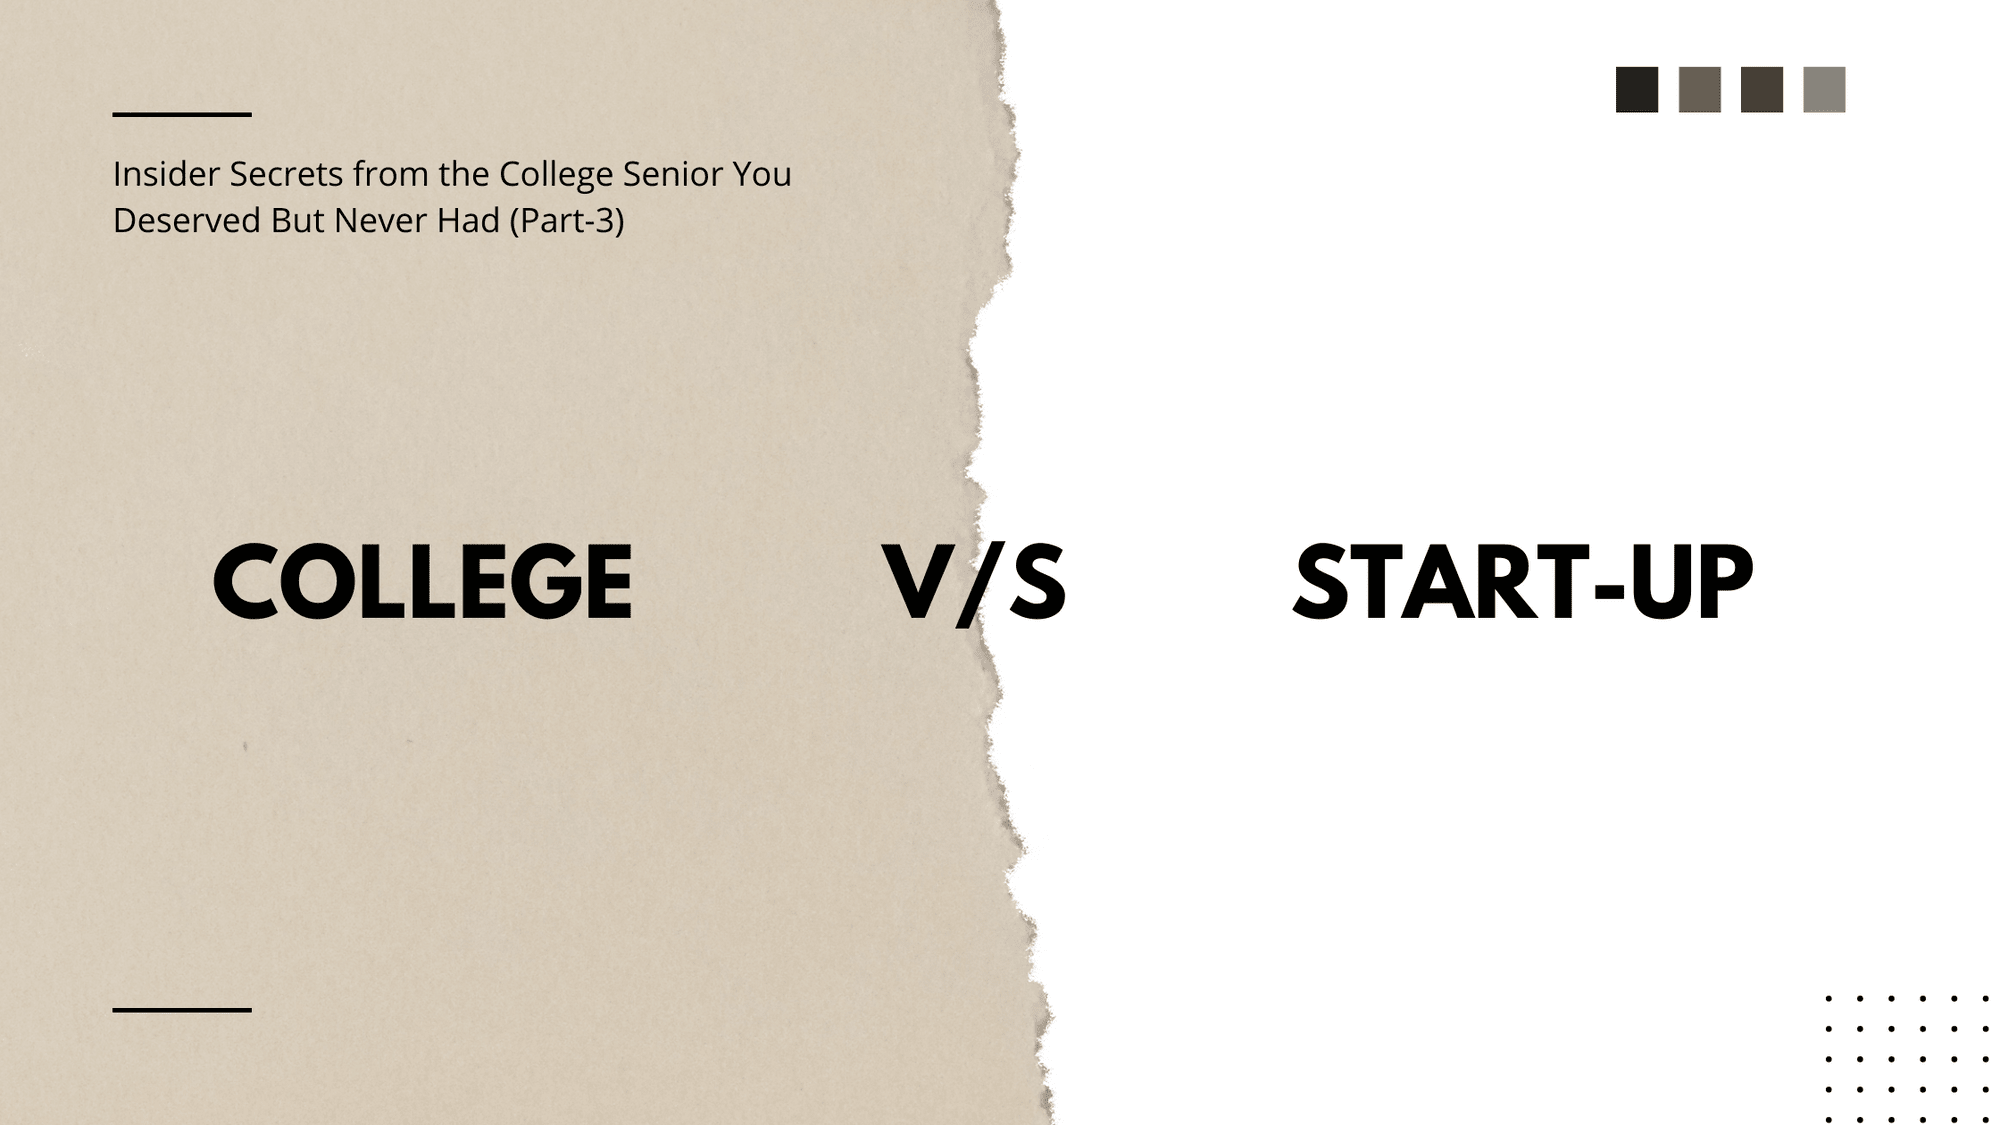 Who wins in College v/s Start-up? Insider Secrets ...